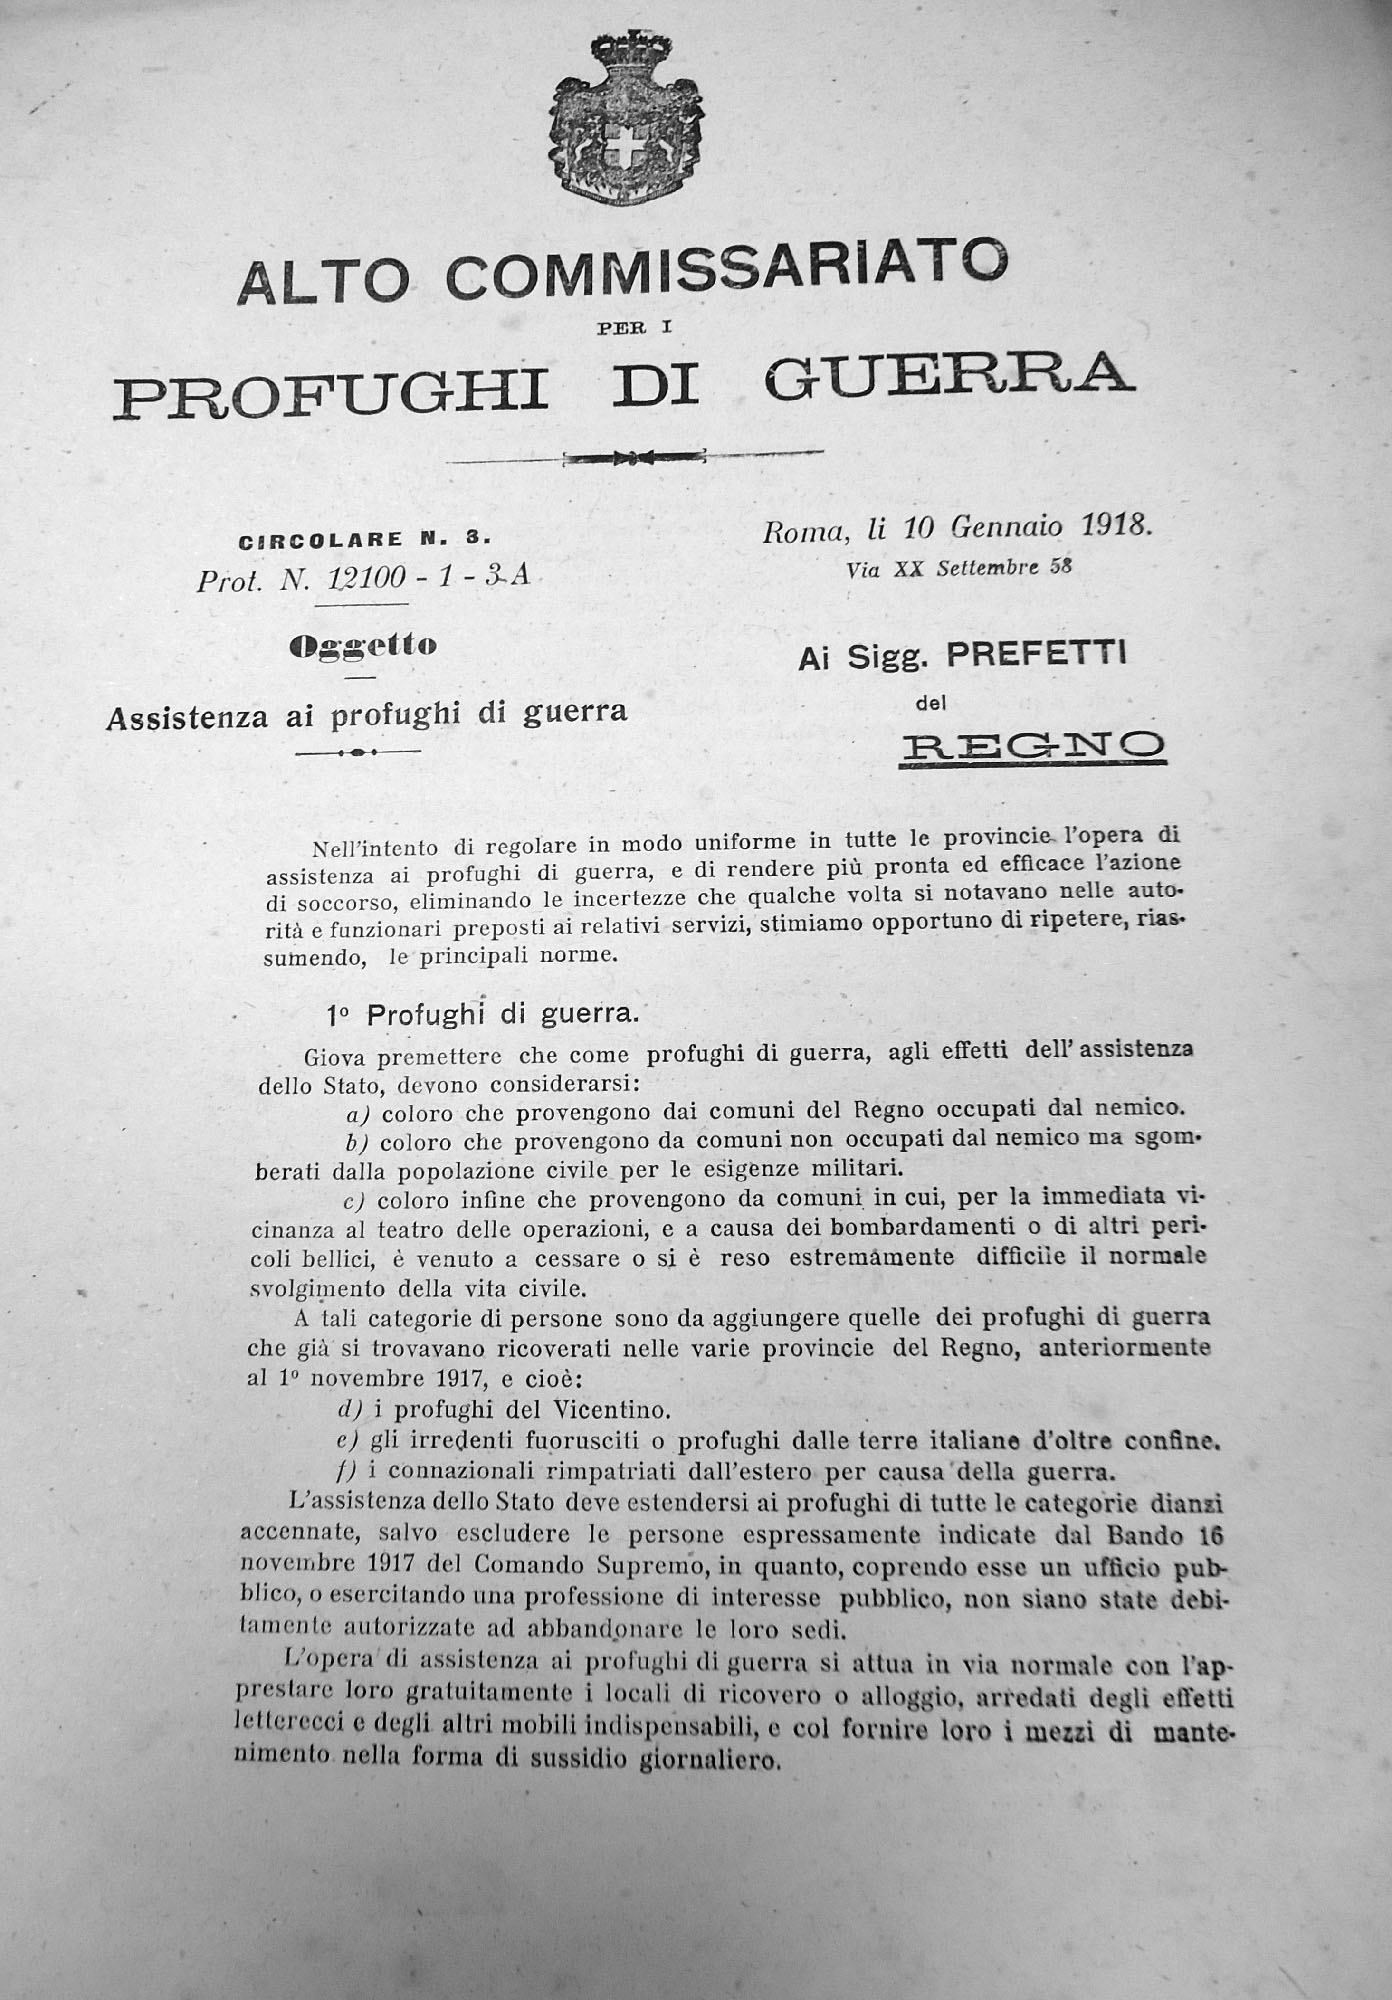 Circolare dell’Alto Commissariato per i profughi di guerra – 10 gennaio 1918 (Archivio storico comunale di Parma)